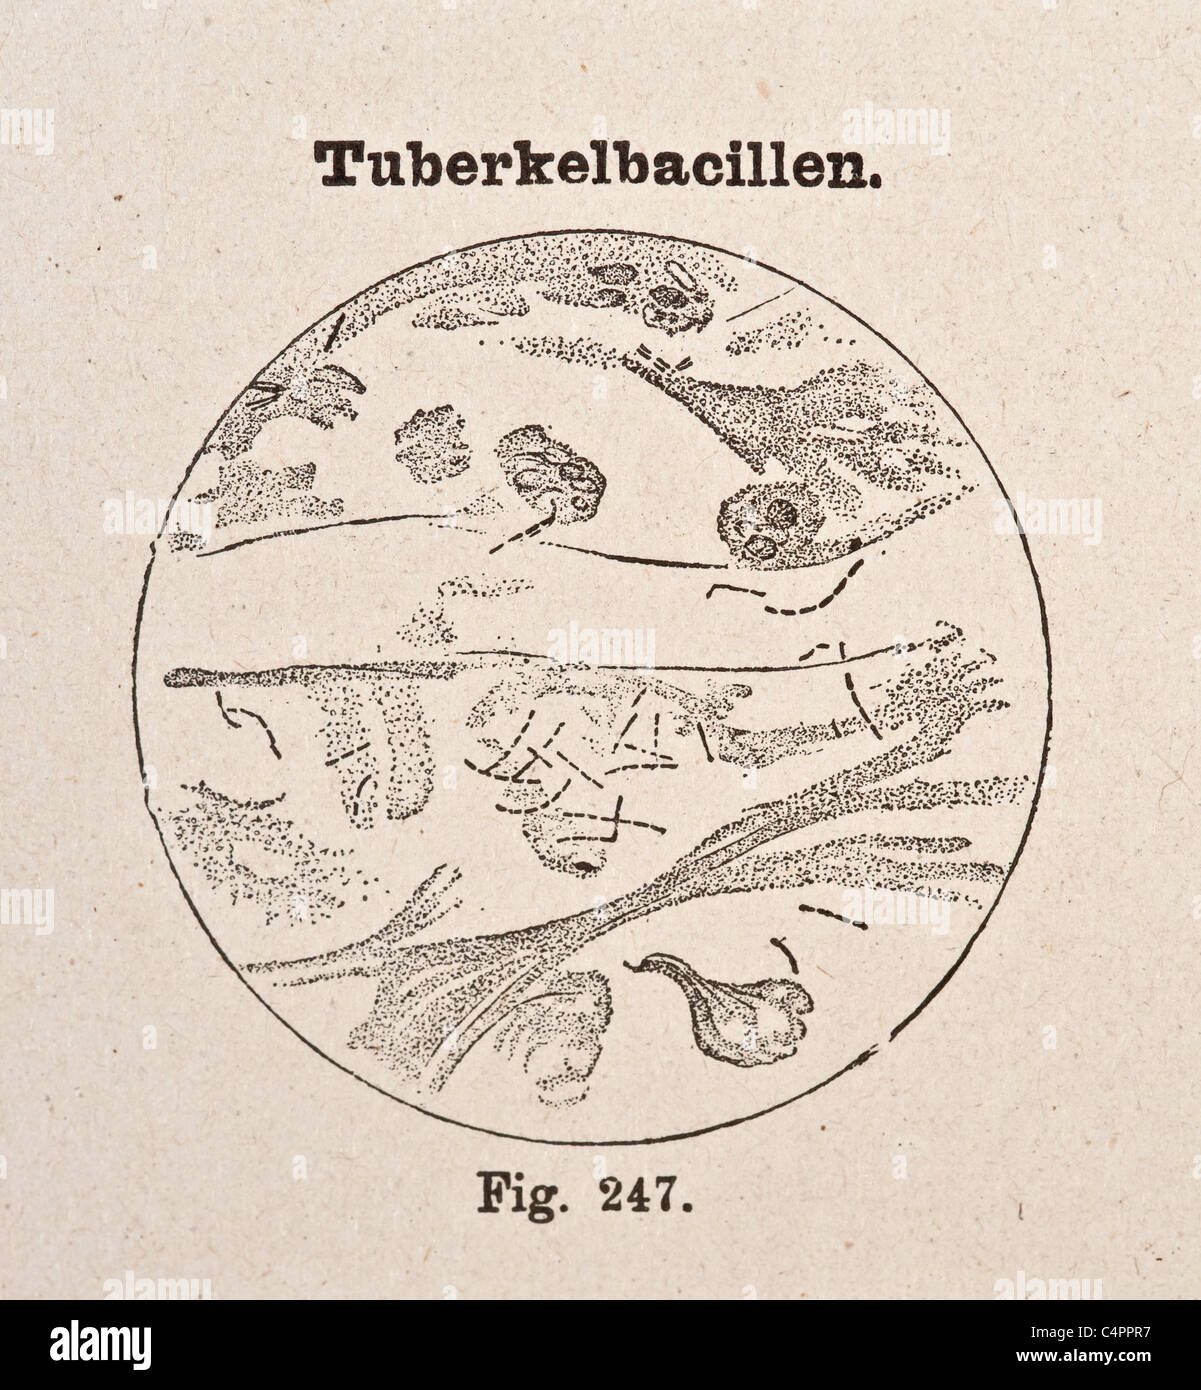 Illustration médicale antique vintage de bactérie de la tuberculose vers 1890 Banque D'Images